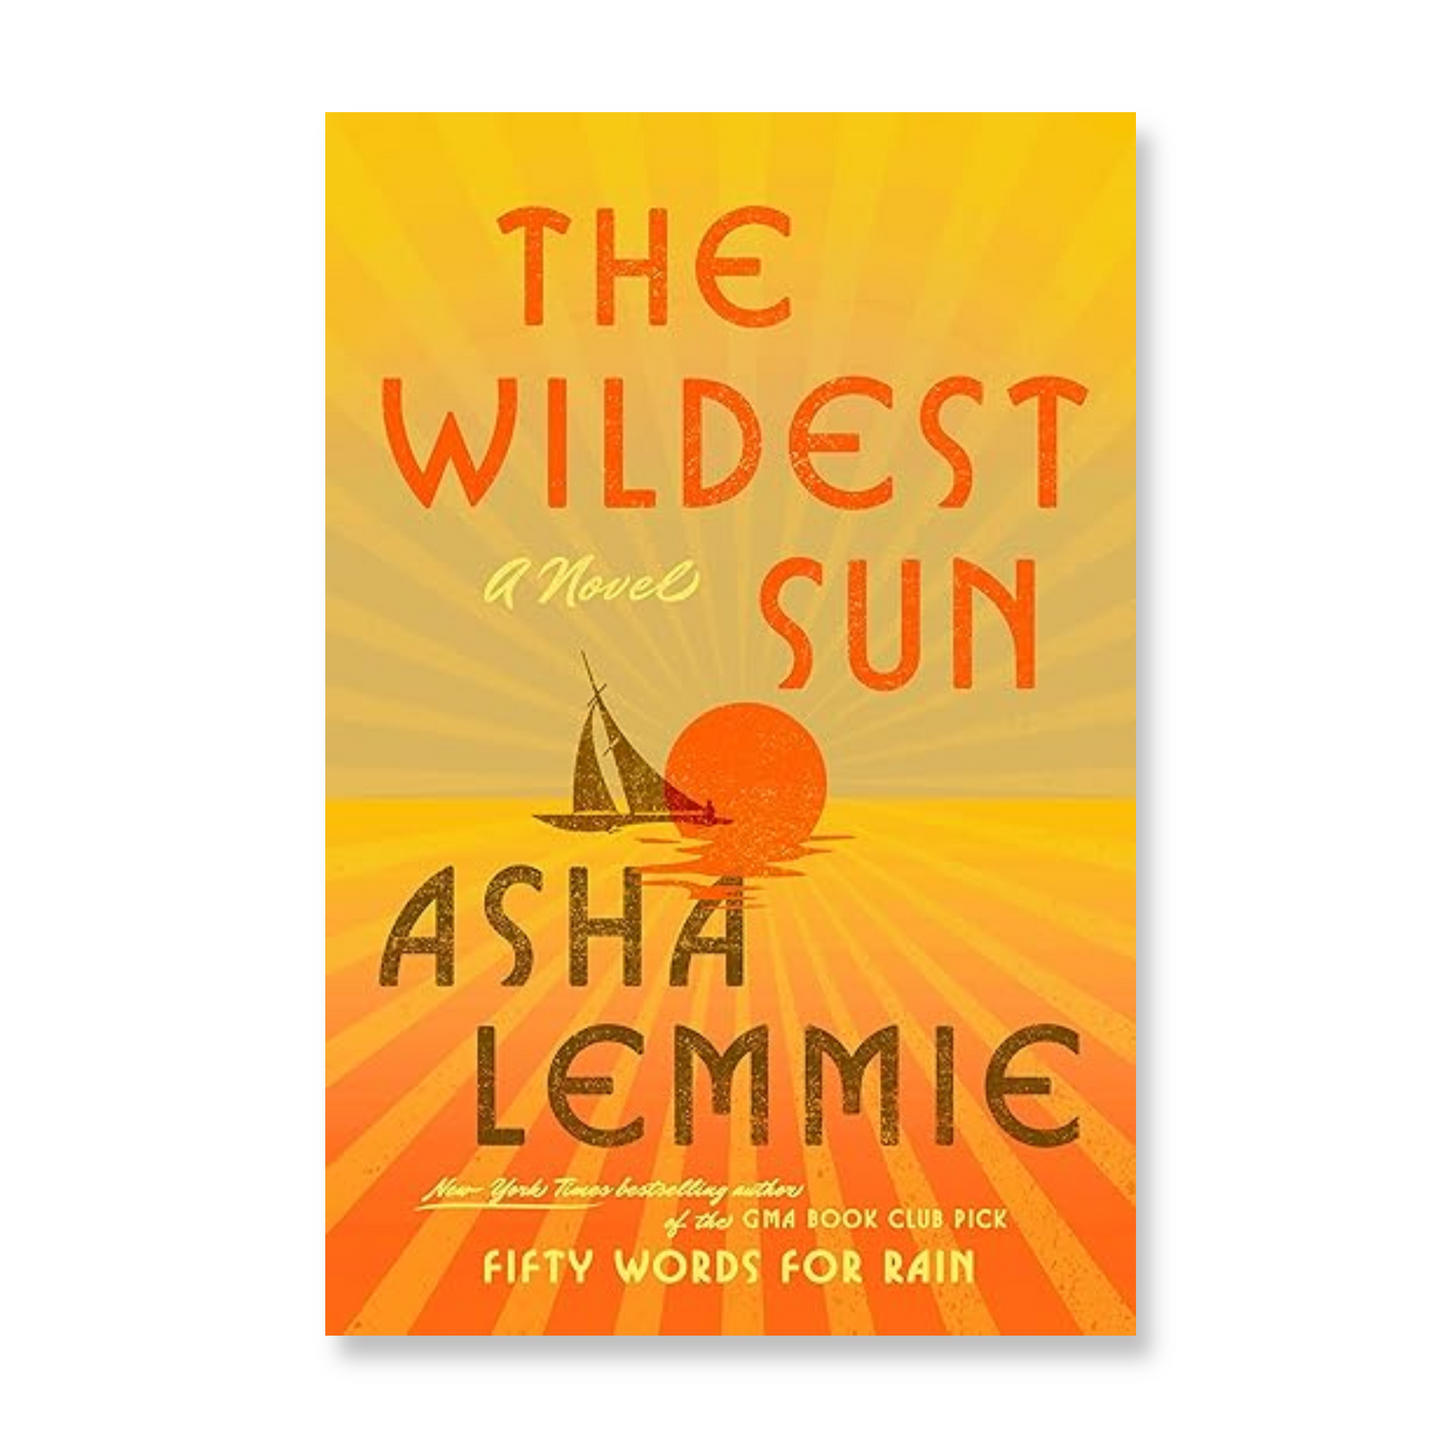 The Wildest Sun: A Novel